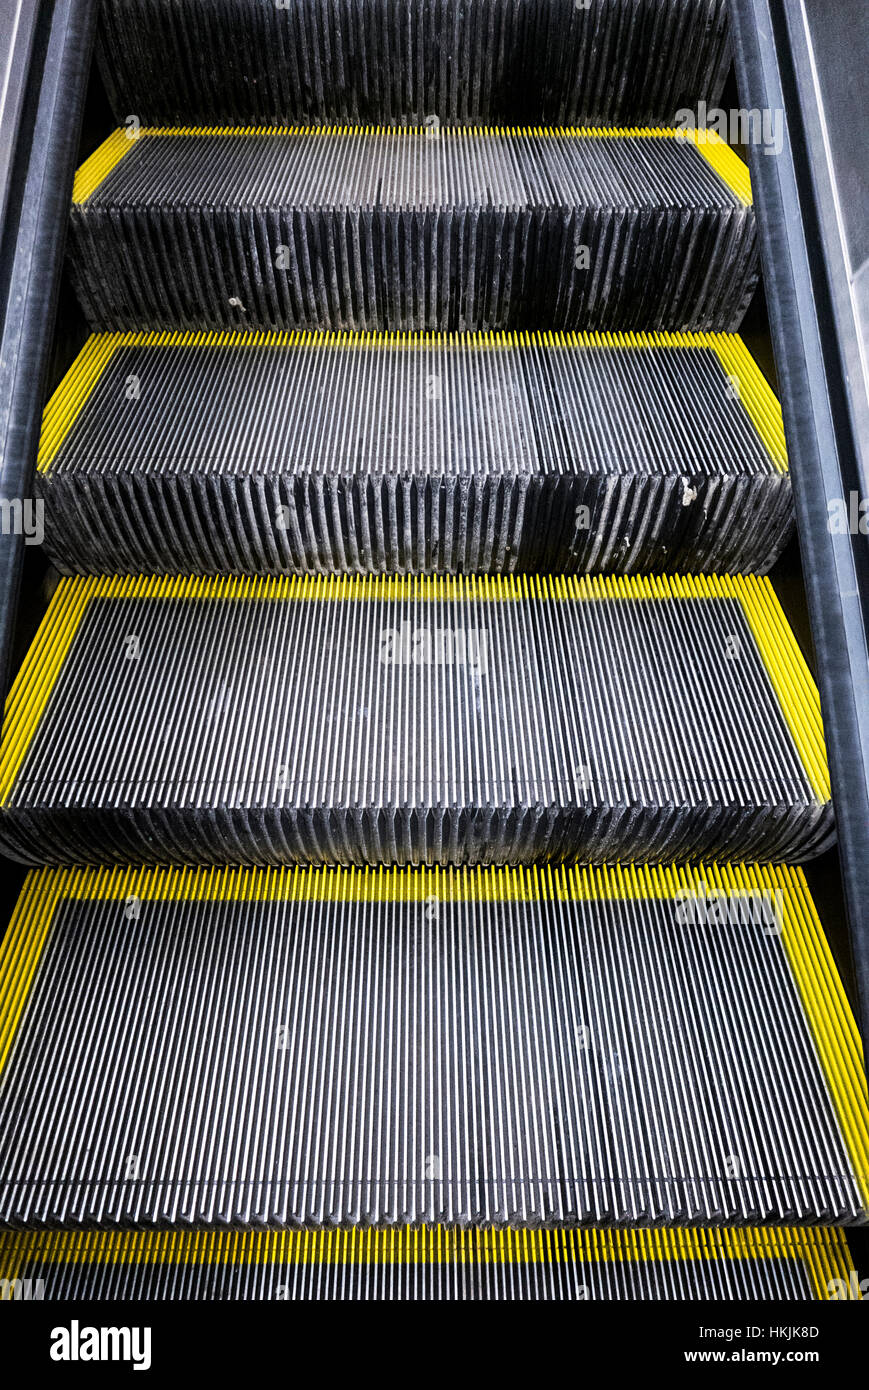 Dettaglio delle scale di Escalator. Foto Stock